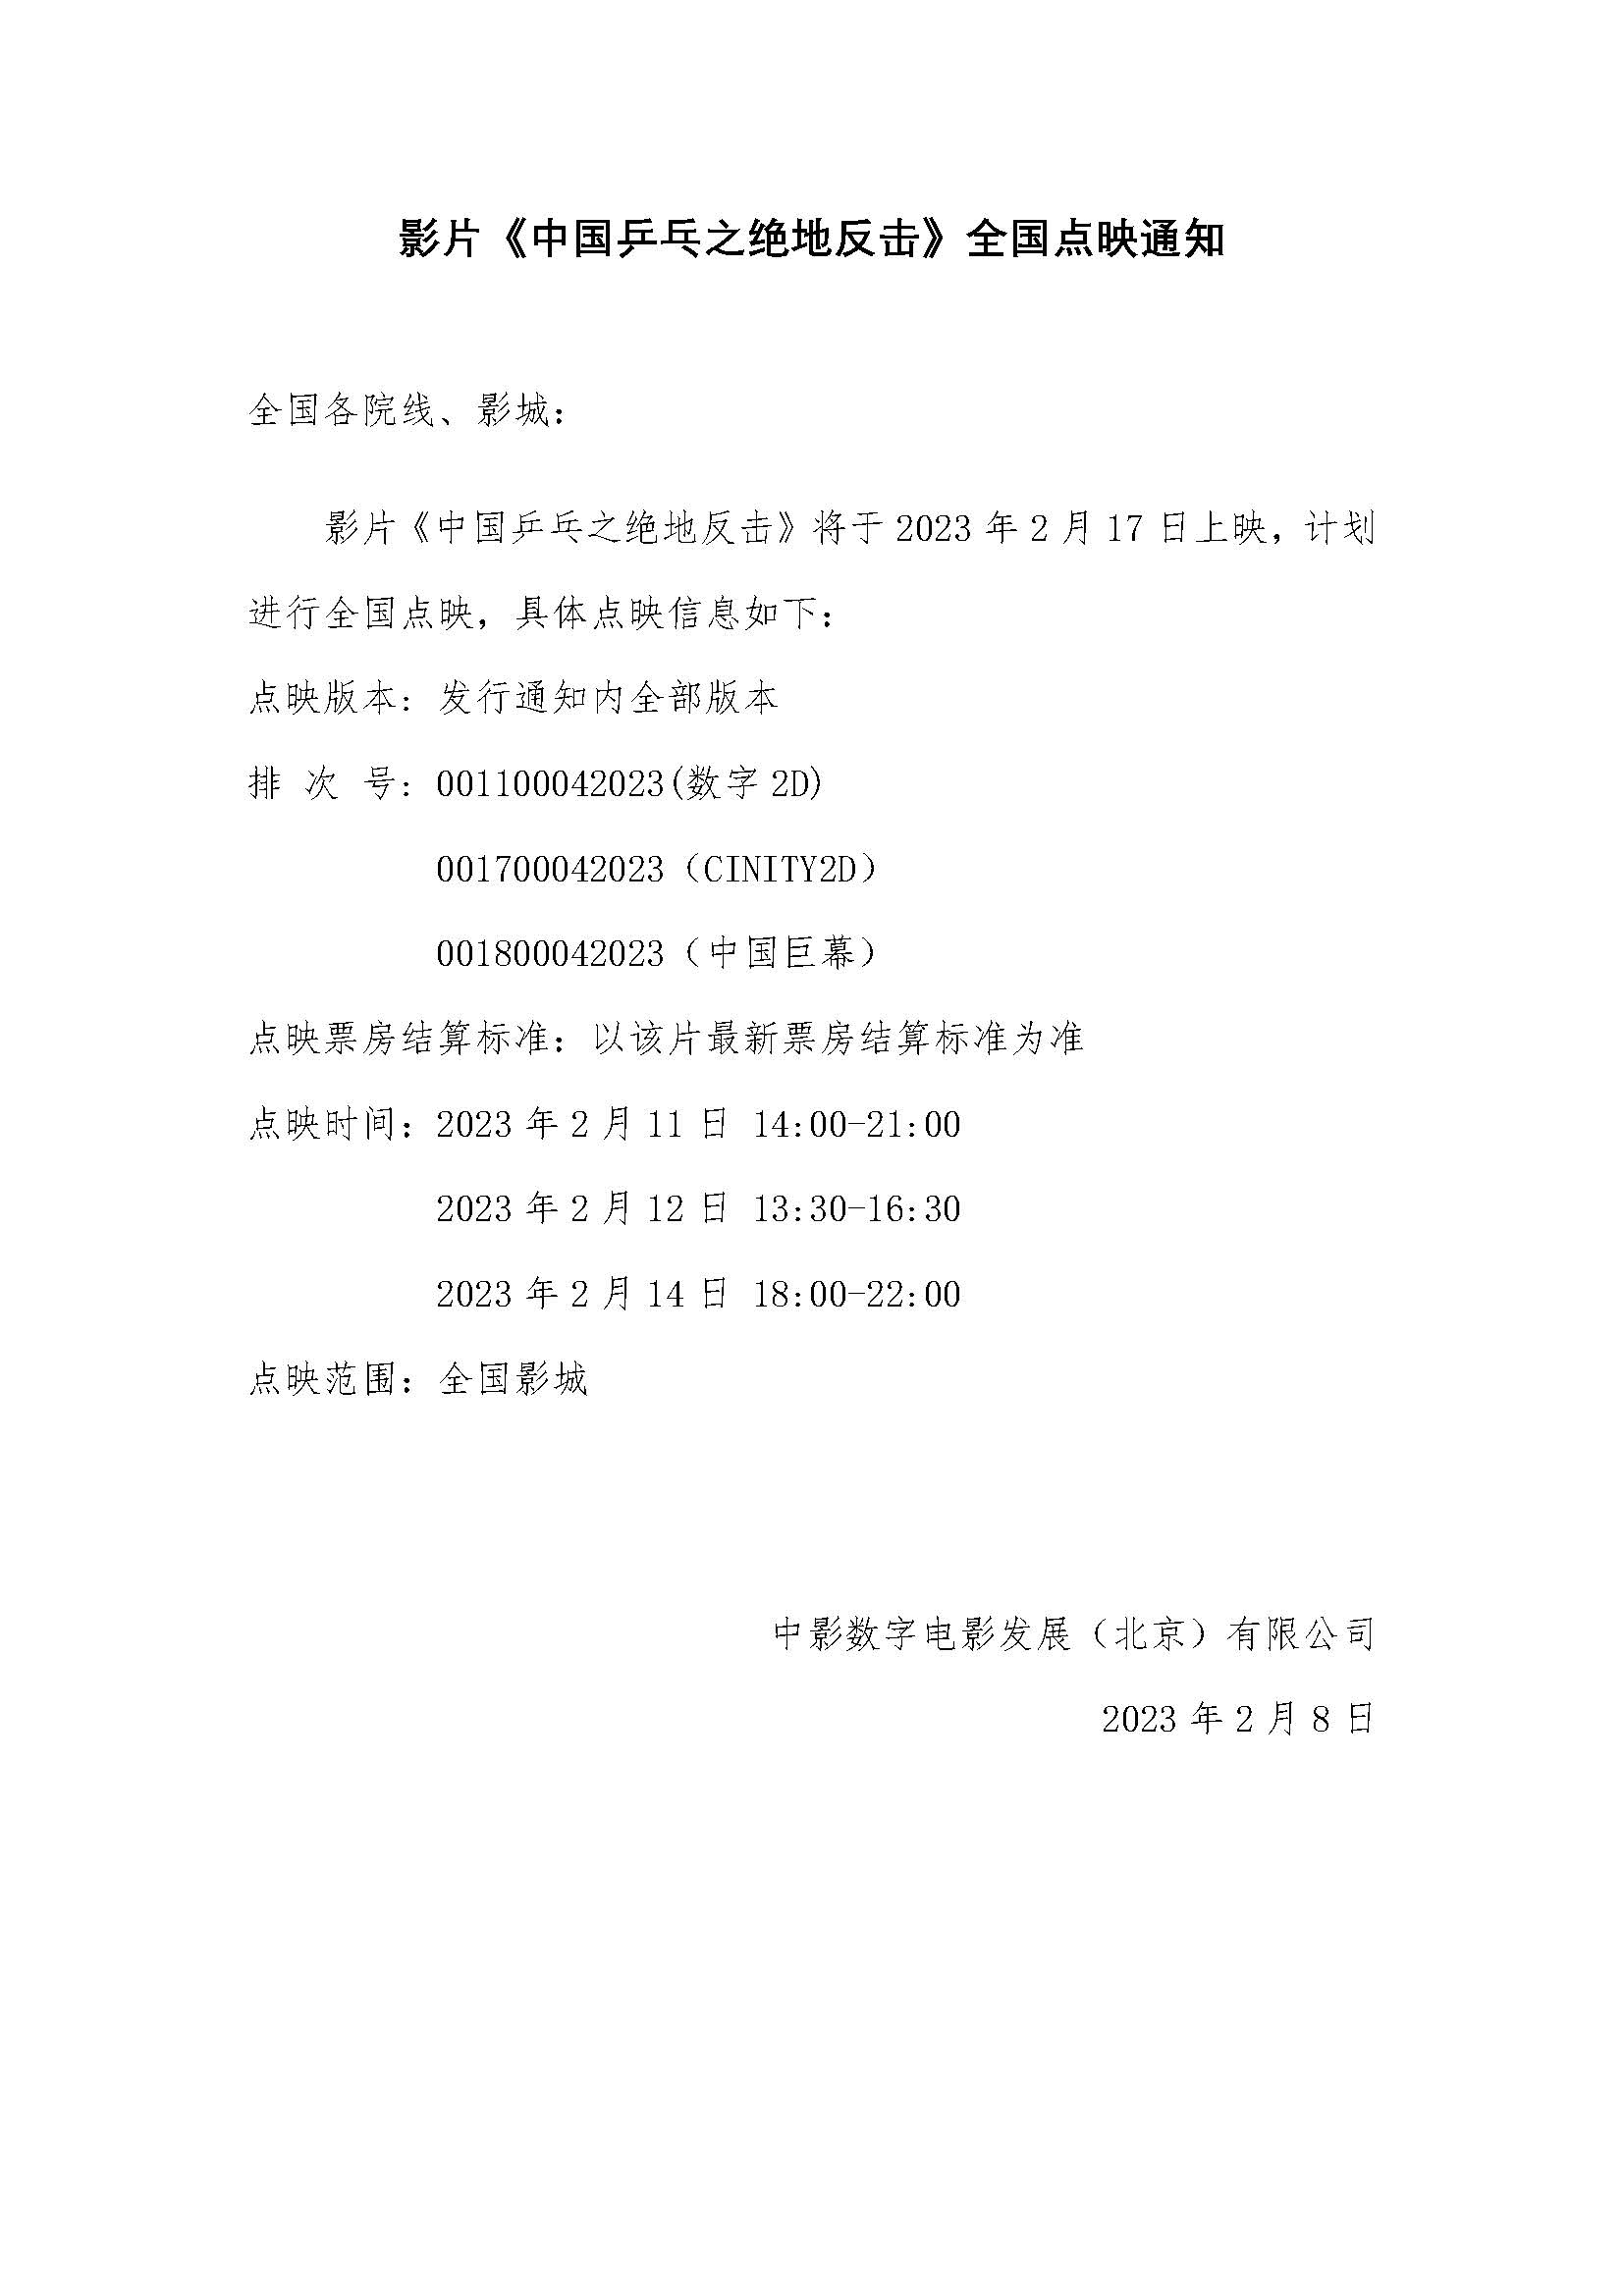 关于影片《中国乒乓之绝地反击》2月11日 - 14日全国点映的通知